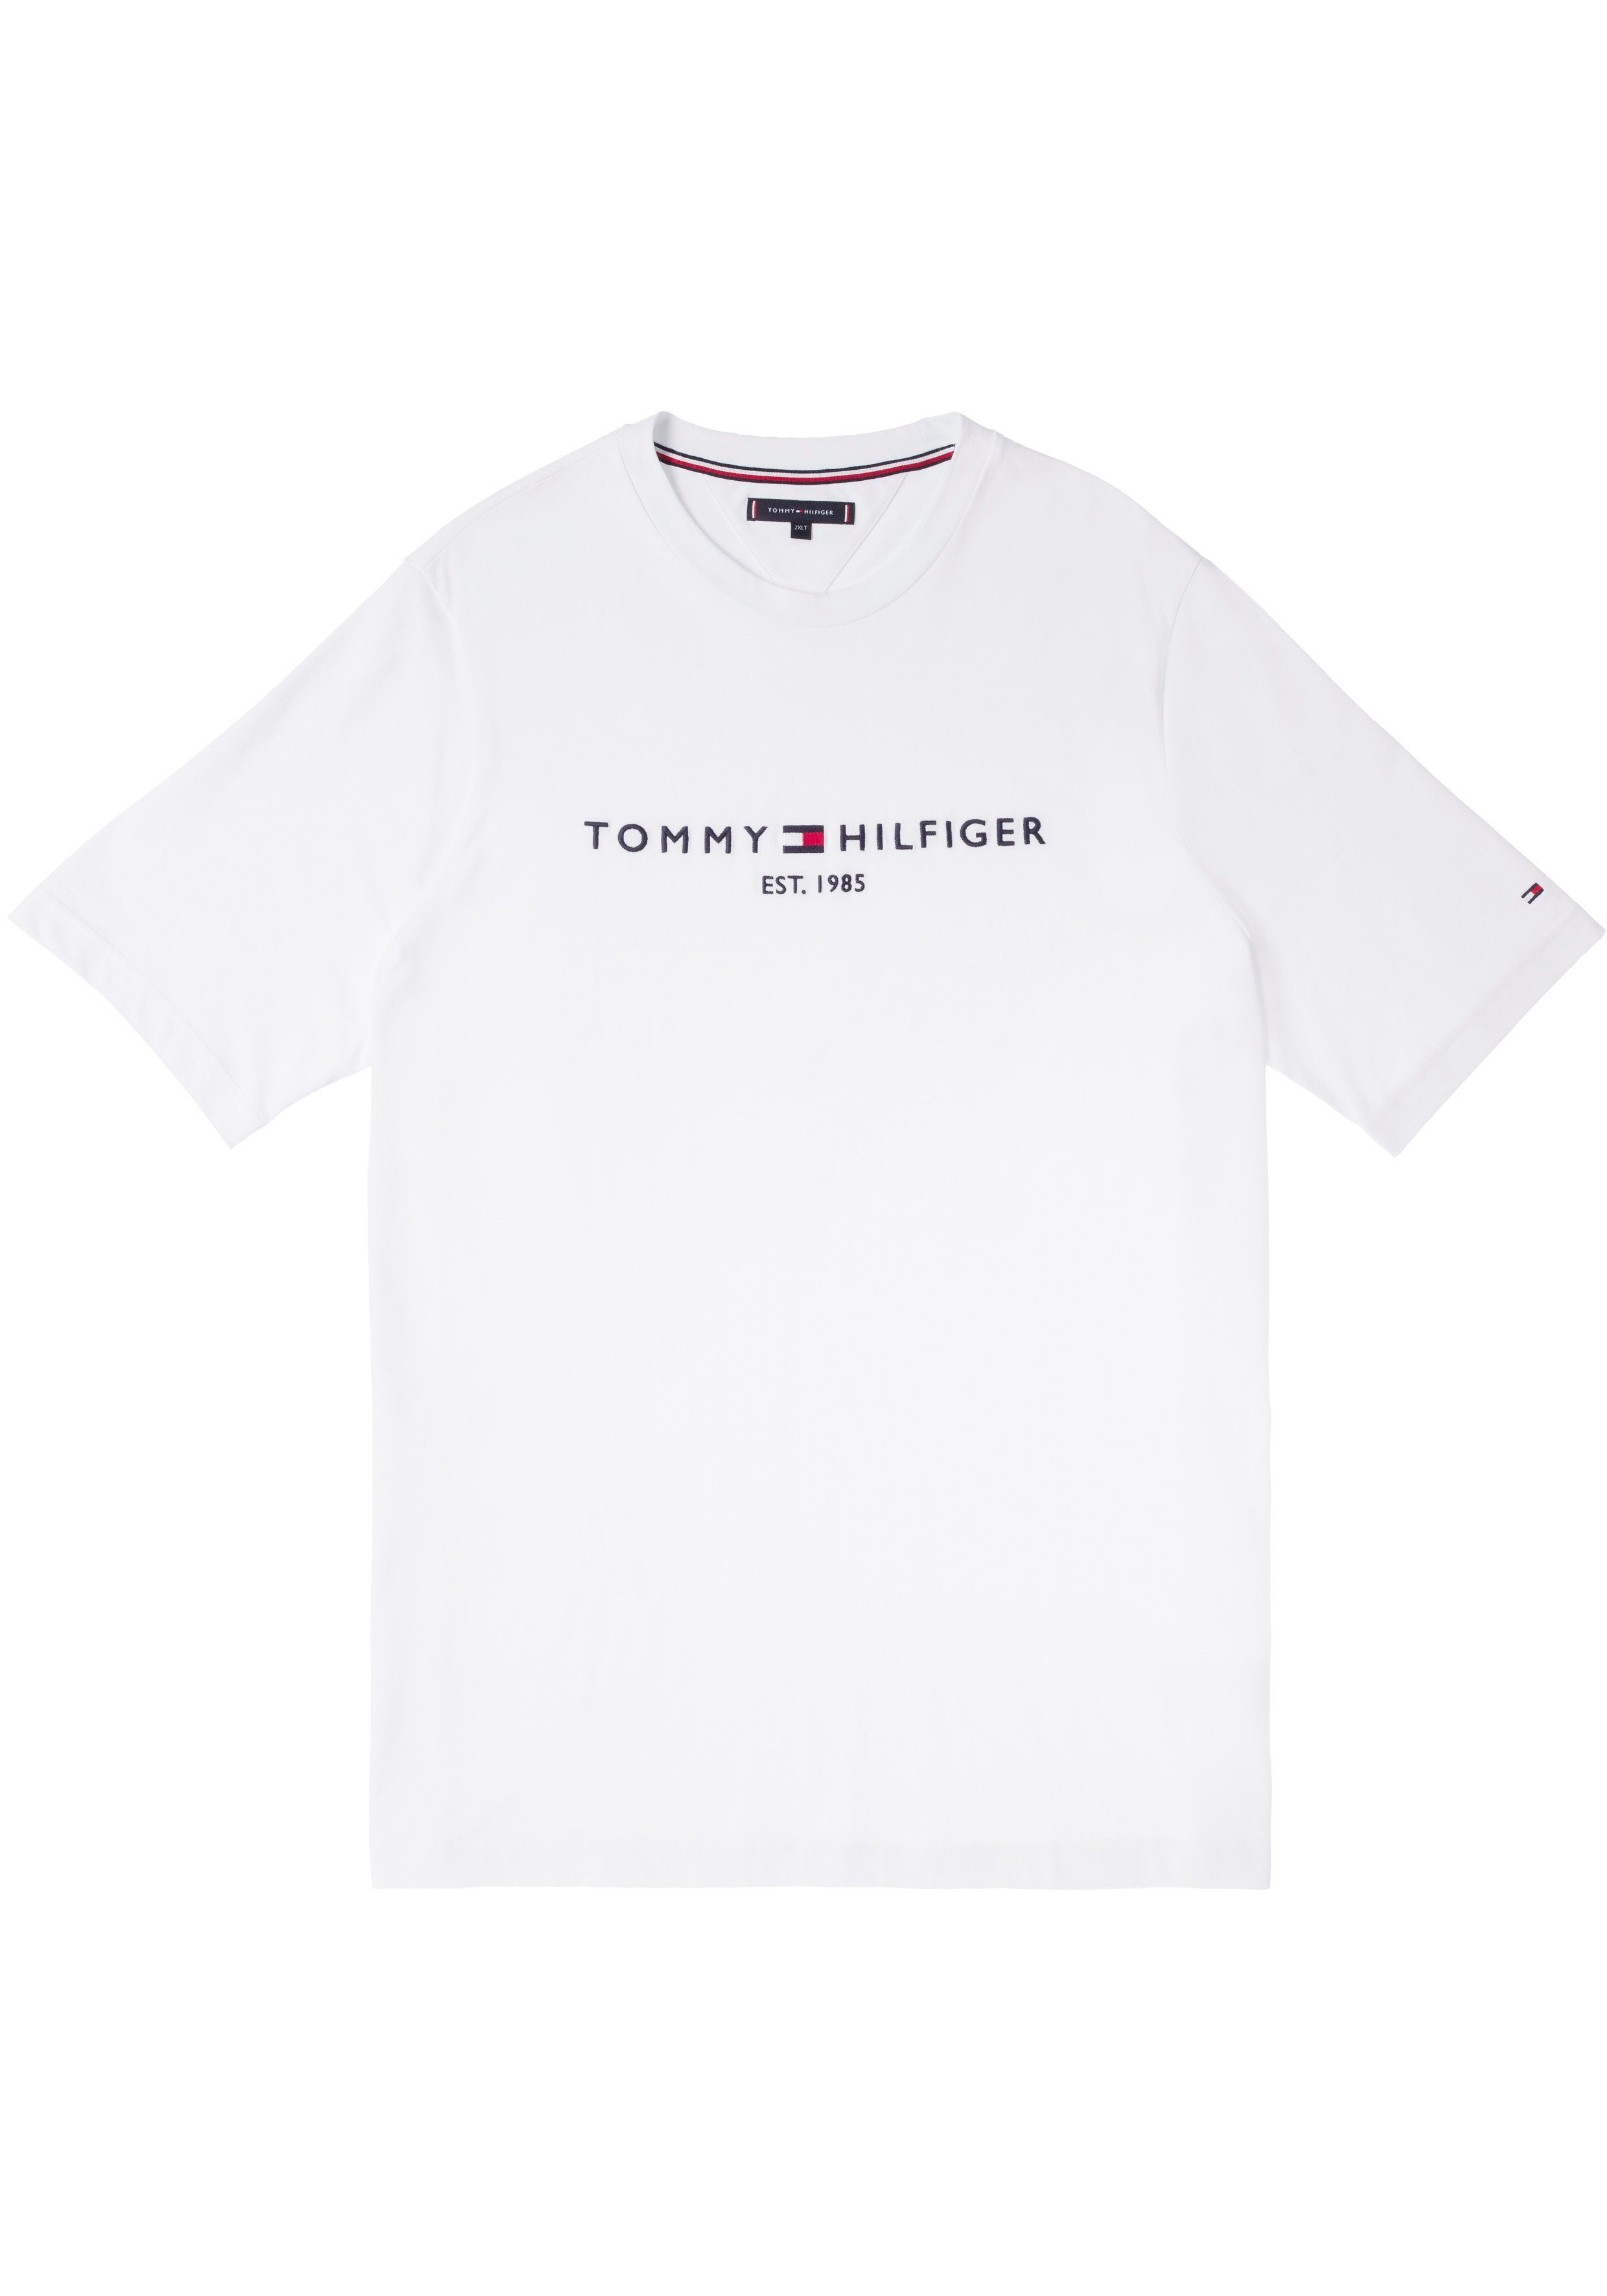 T-Shirt weiß der Tommy TEE-B BT-TOMMY Hilfiger mit Tommy Brust Big auf Logoschriftzug Tall Hilfiger & LOGO